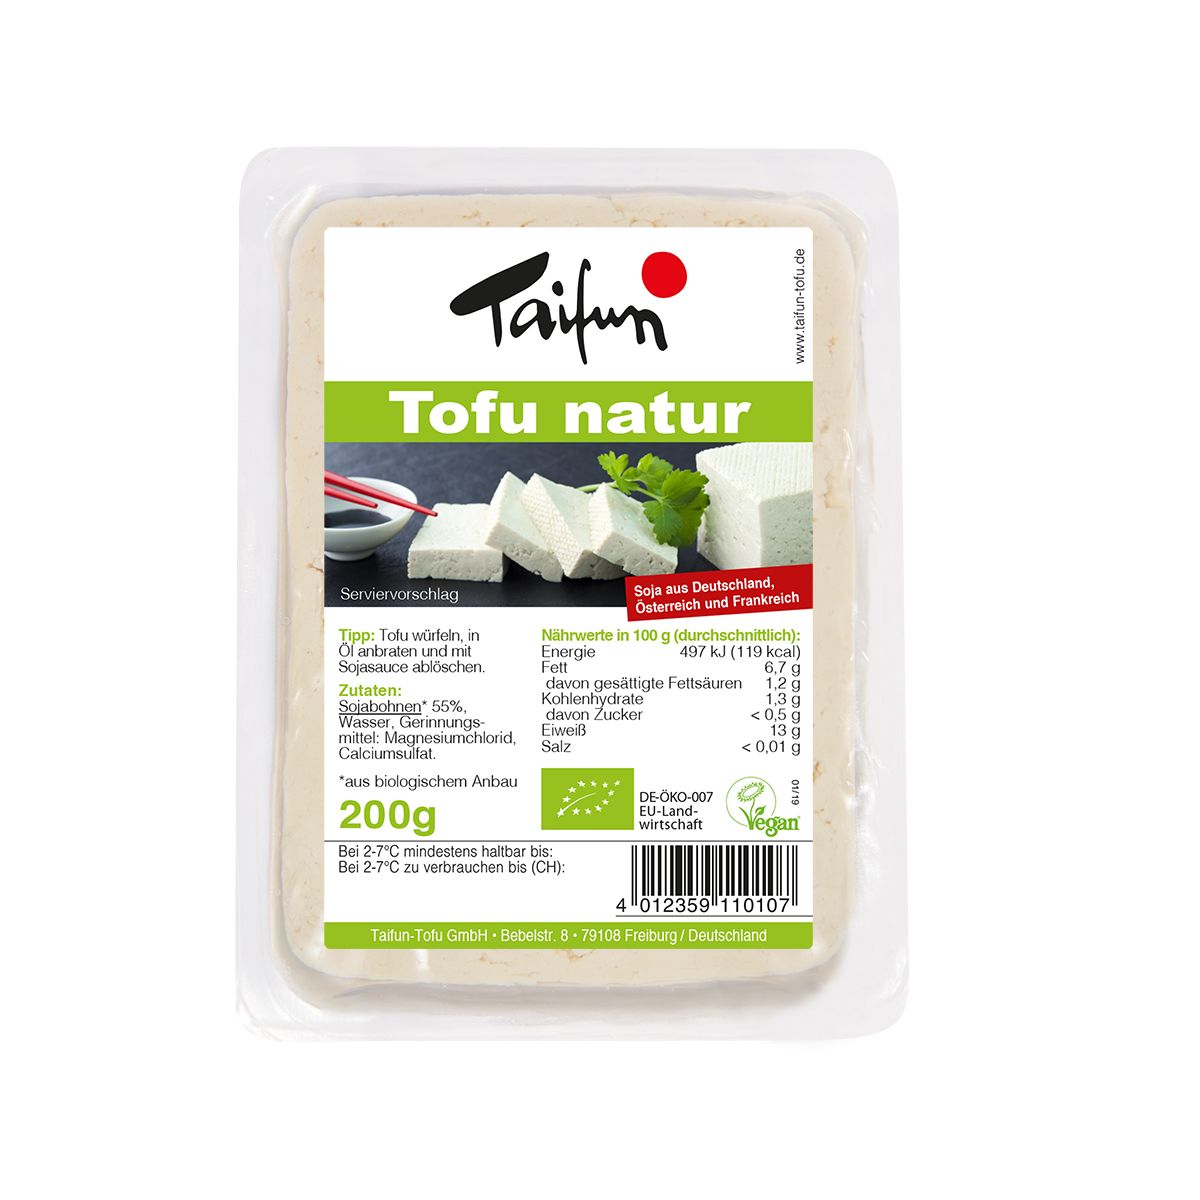 Tofu & Tempeh